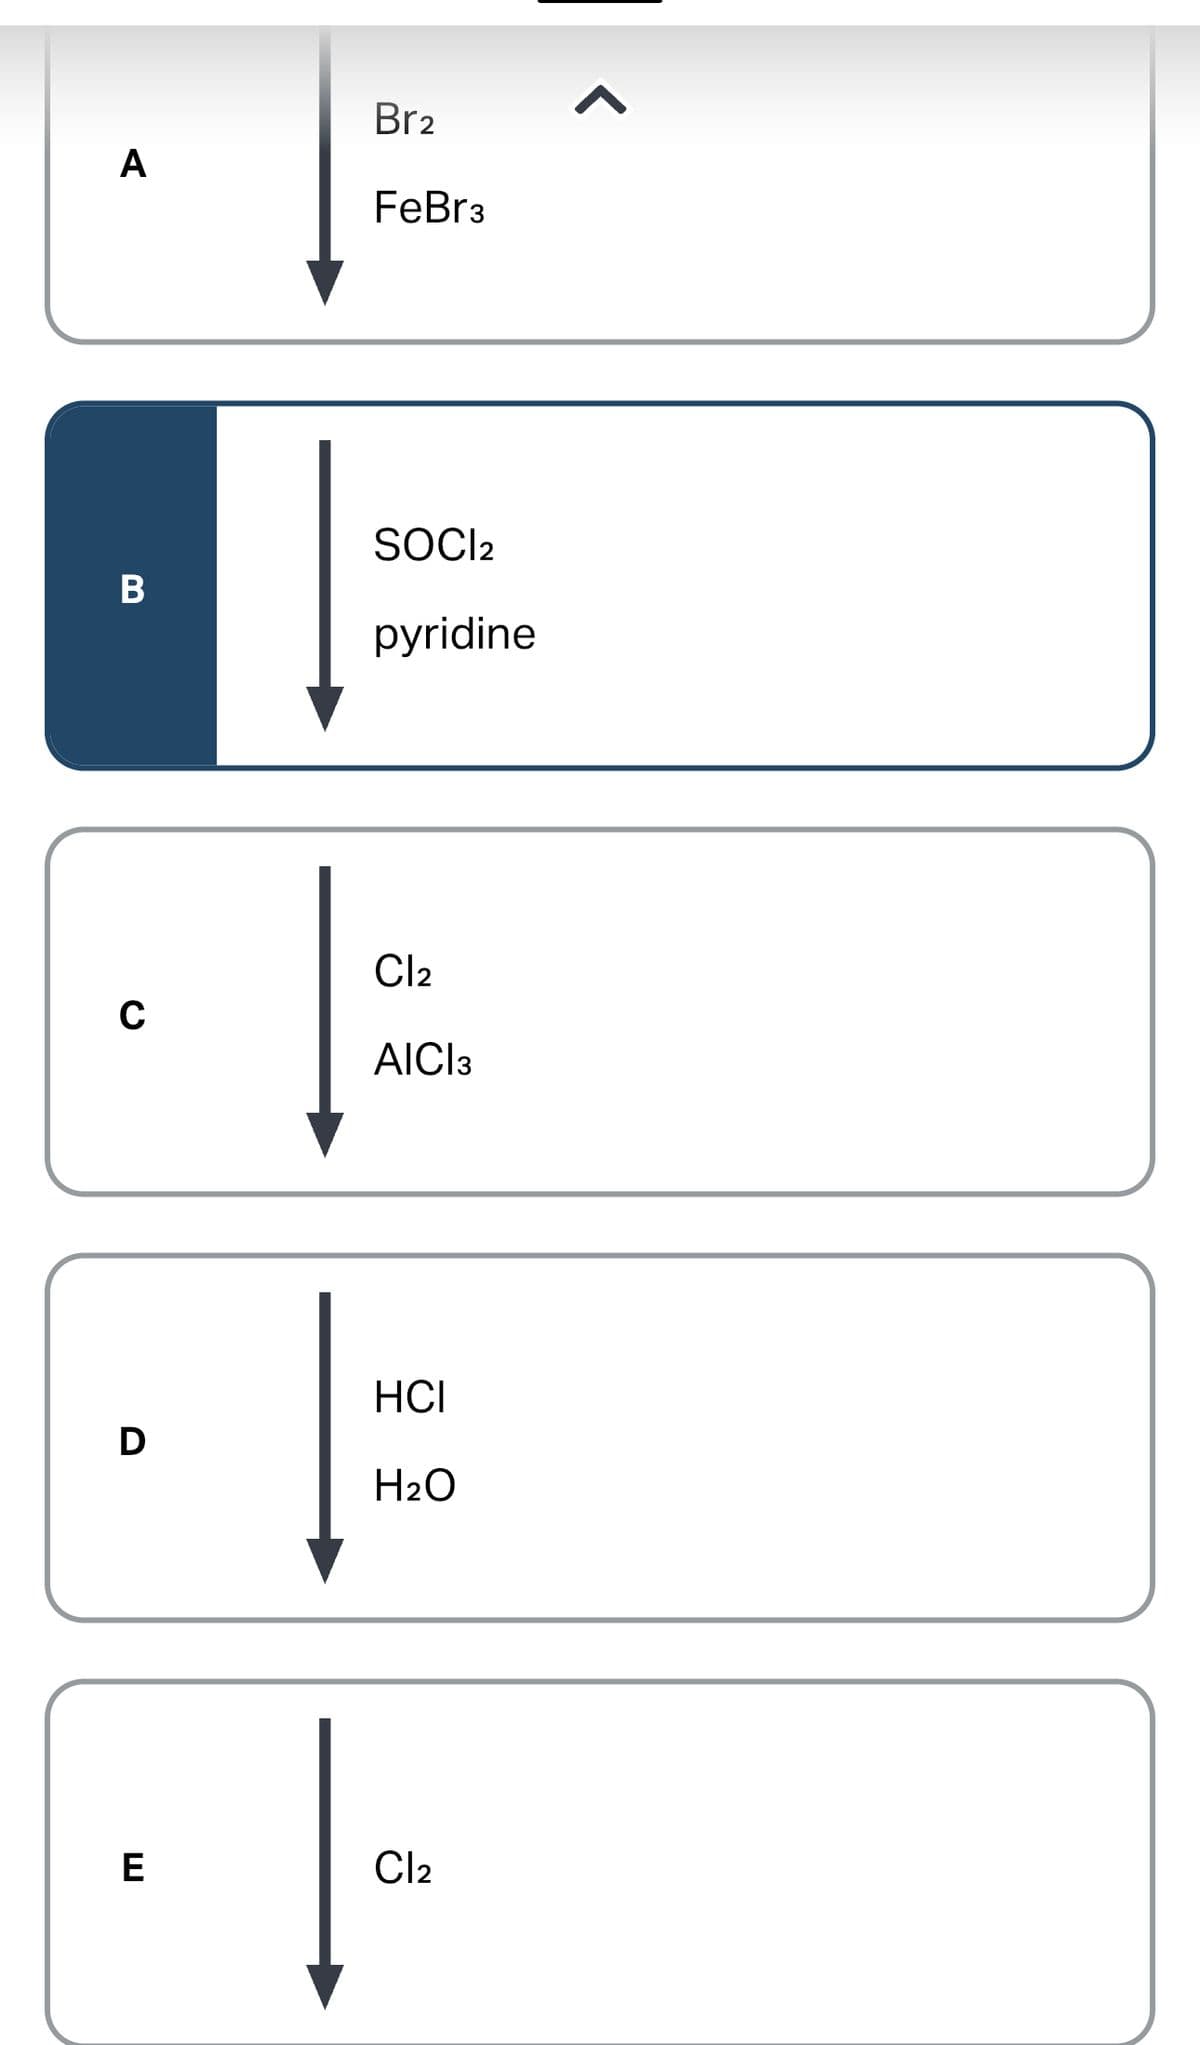 A
B
C
D
E
Br2
FeBr3
SOCI2
pyridine
Cl₂
AICI 3
HCI
H₂O
Cl₂